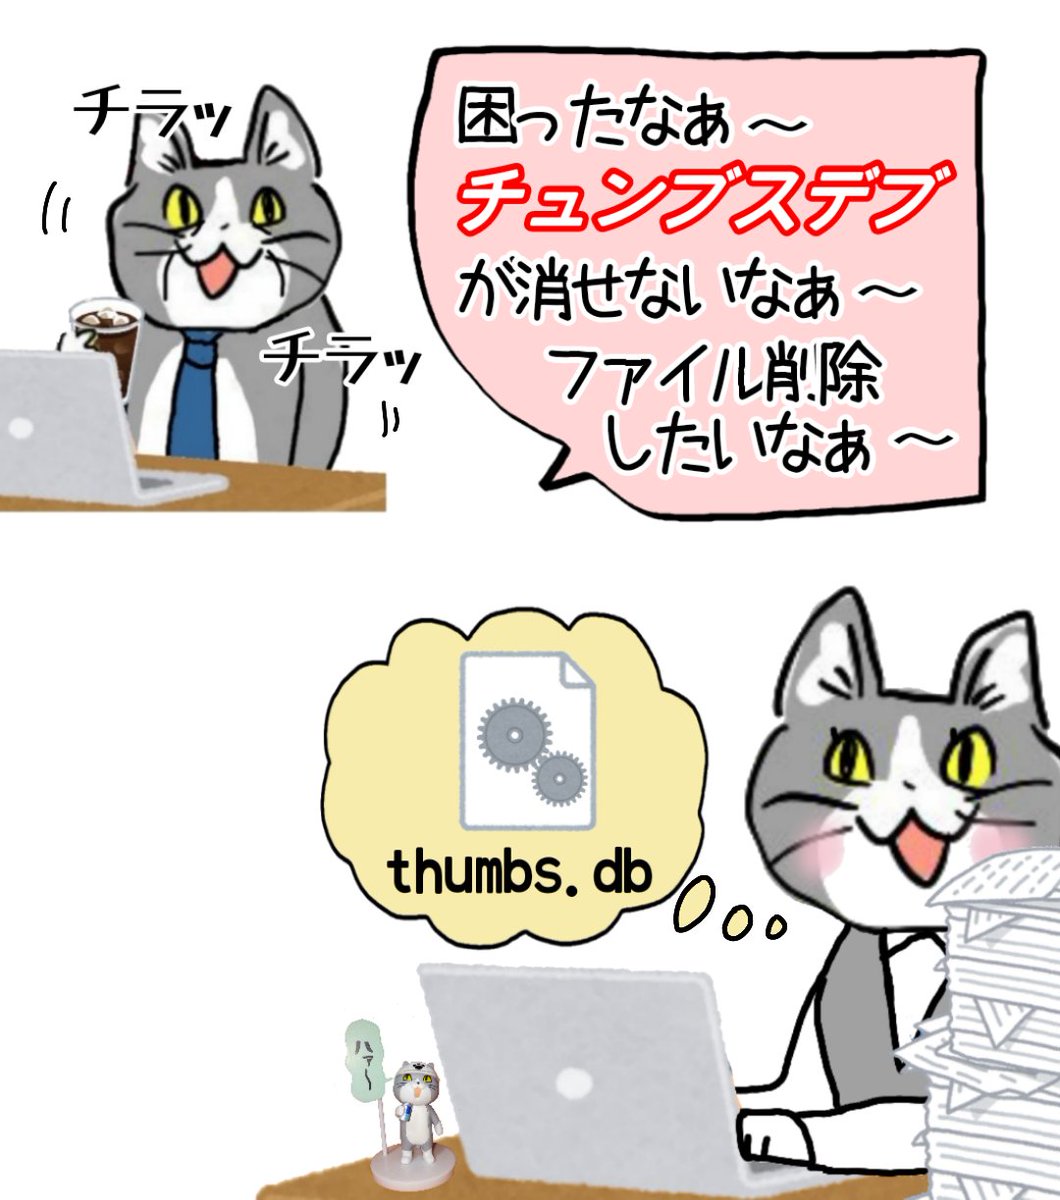 意味不明な上司猫「チュンブスデブってのが消えないなぁ〜困ったなあ〜!!!!(クソデカ独り言)(事務猫さんをチラッチラッ)」 #現場猫